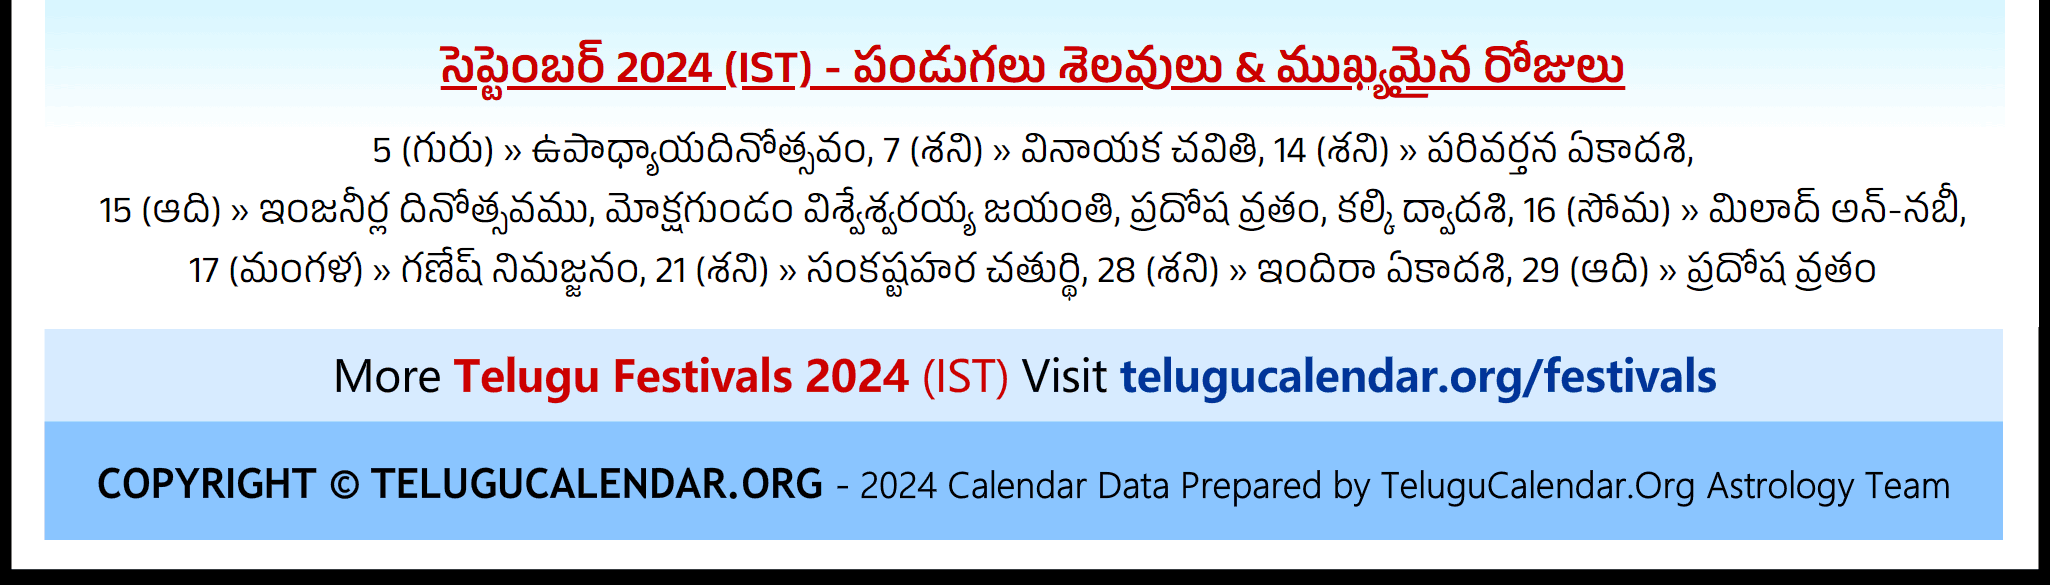 Telugu Festivals (IST) 2024 September